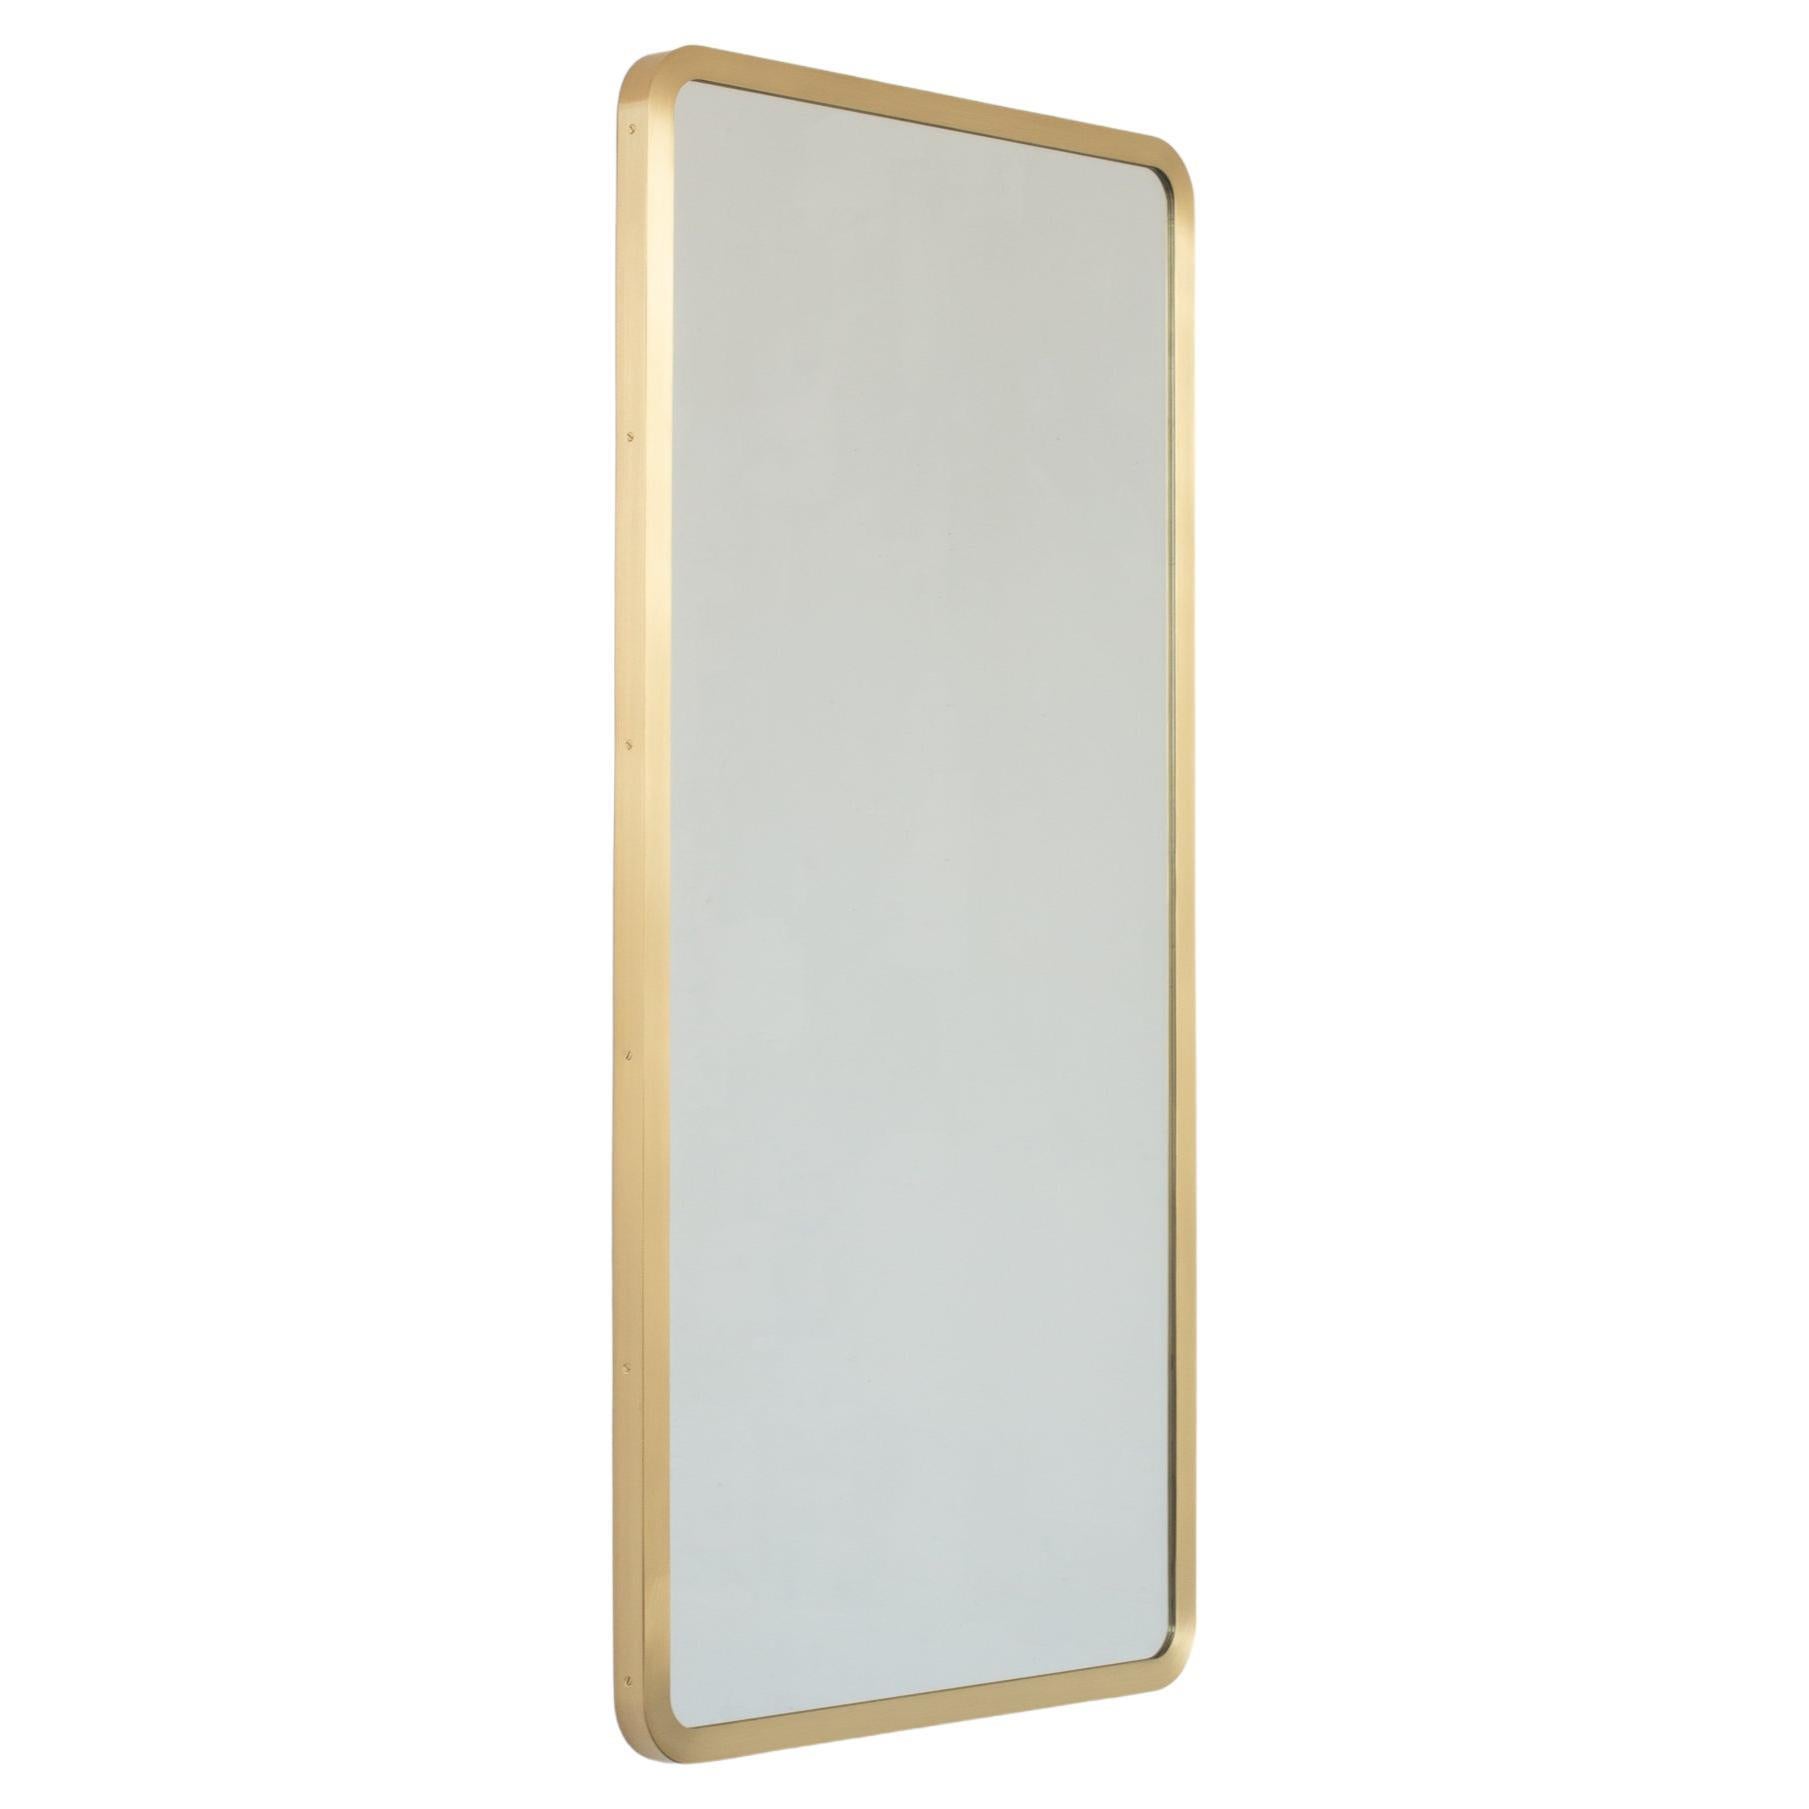 Miroir contemporain rectangulaire Quadris avec cadre en laiton sur toute la surface, moyen